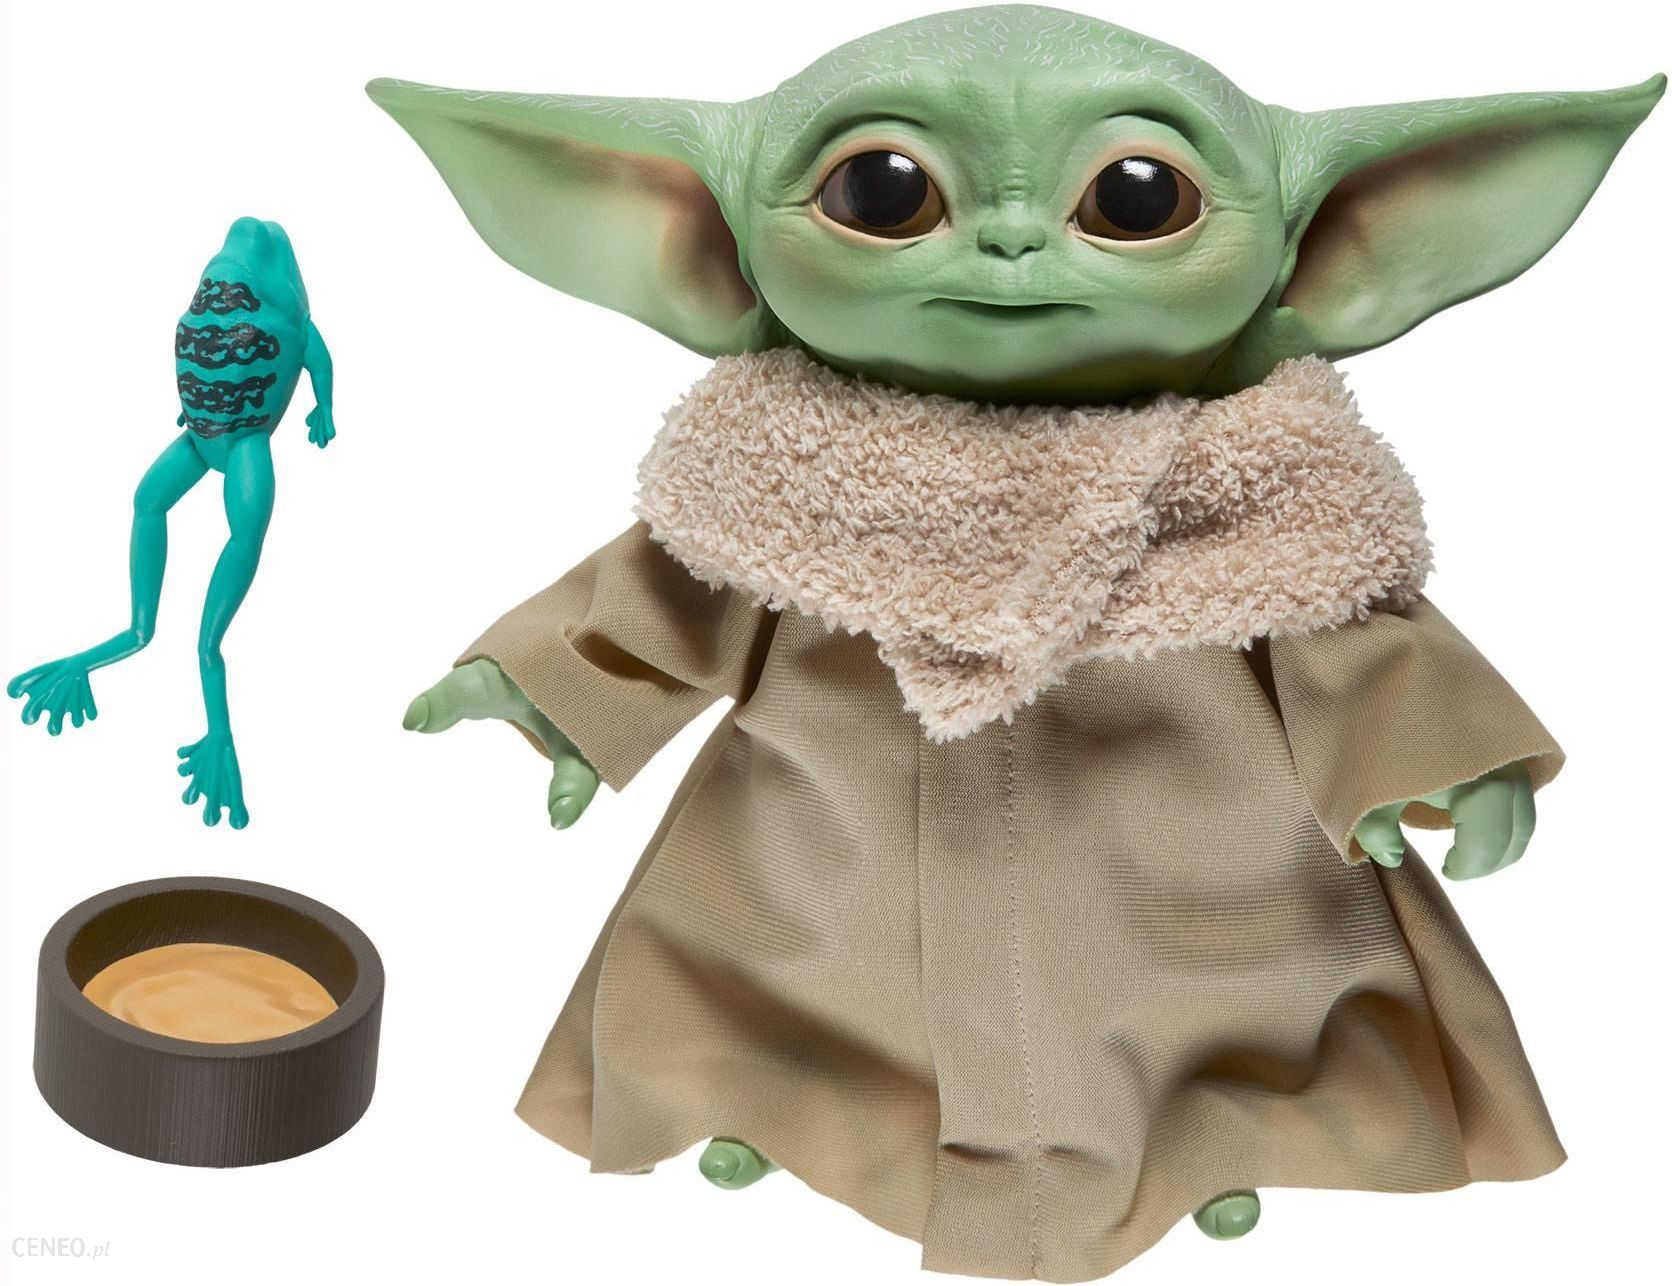 Hasbro Star Wars The Child Talking Plush Toy Baby Yoda F1115